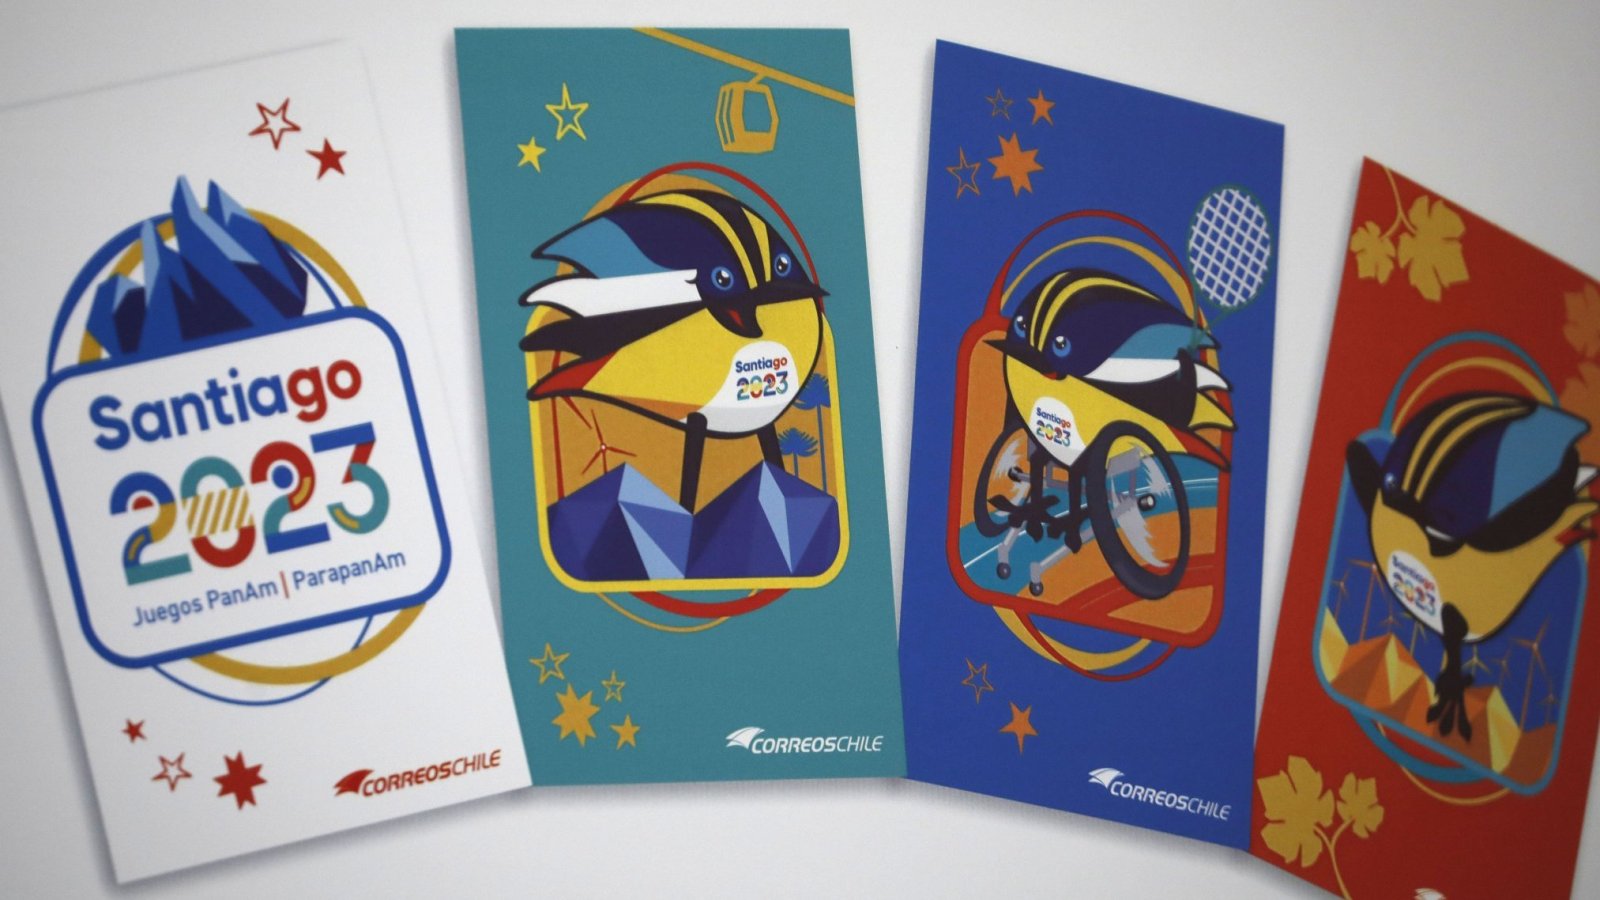 Sellos postales de CorreosChile para los Juegos Panamericanos y Parapanamericanos 2023.